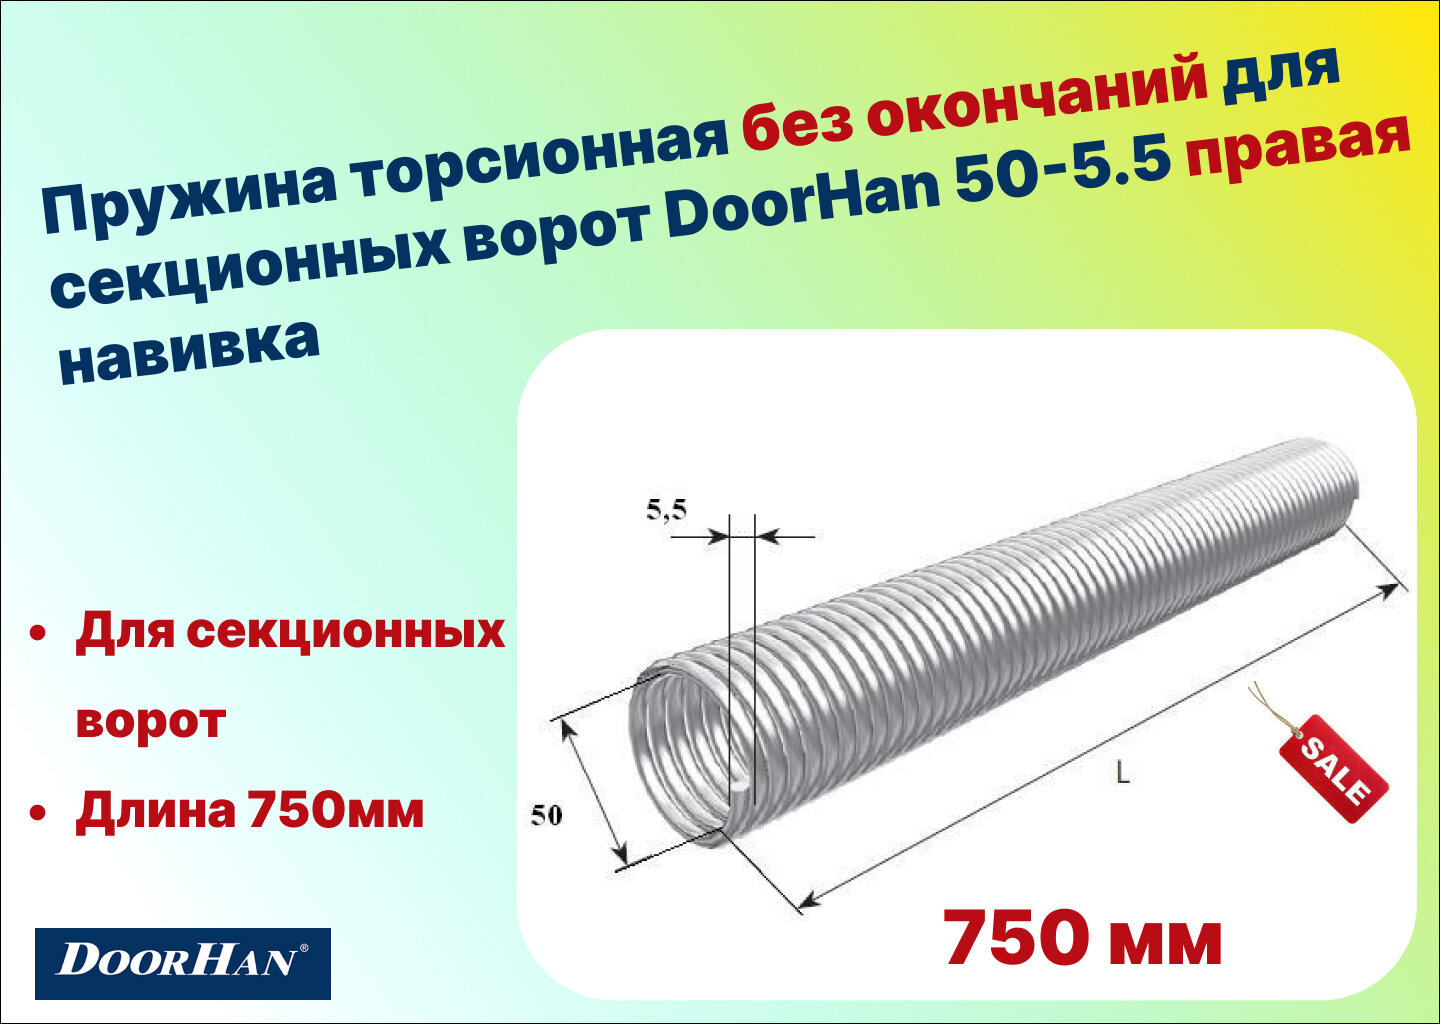 Пружина торсионная без окончаний для секционных ворот DoorHan 50-5.5 правая навивка длина 750 мм (32055/mR/RAL7004 )